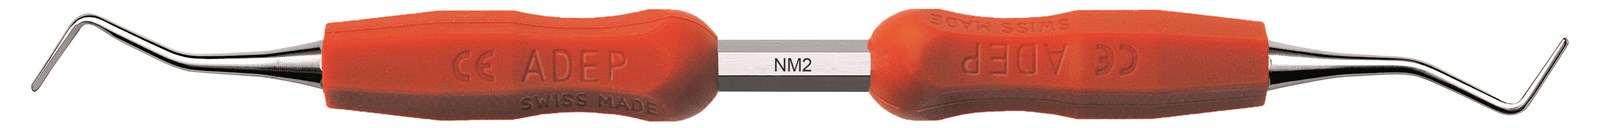 Lžičkové dlátko - NM2, ADEP žlutý